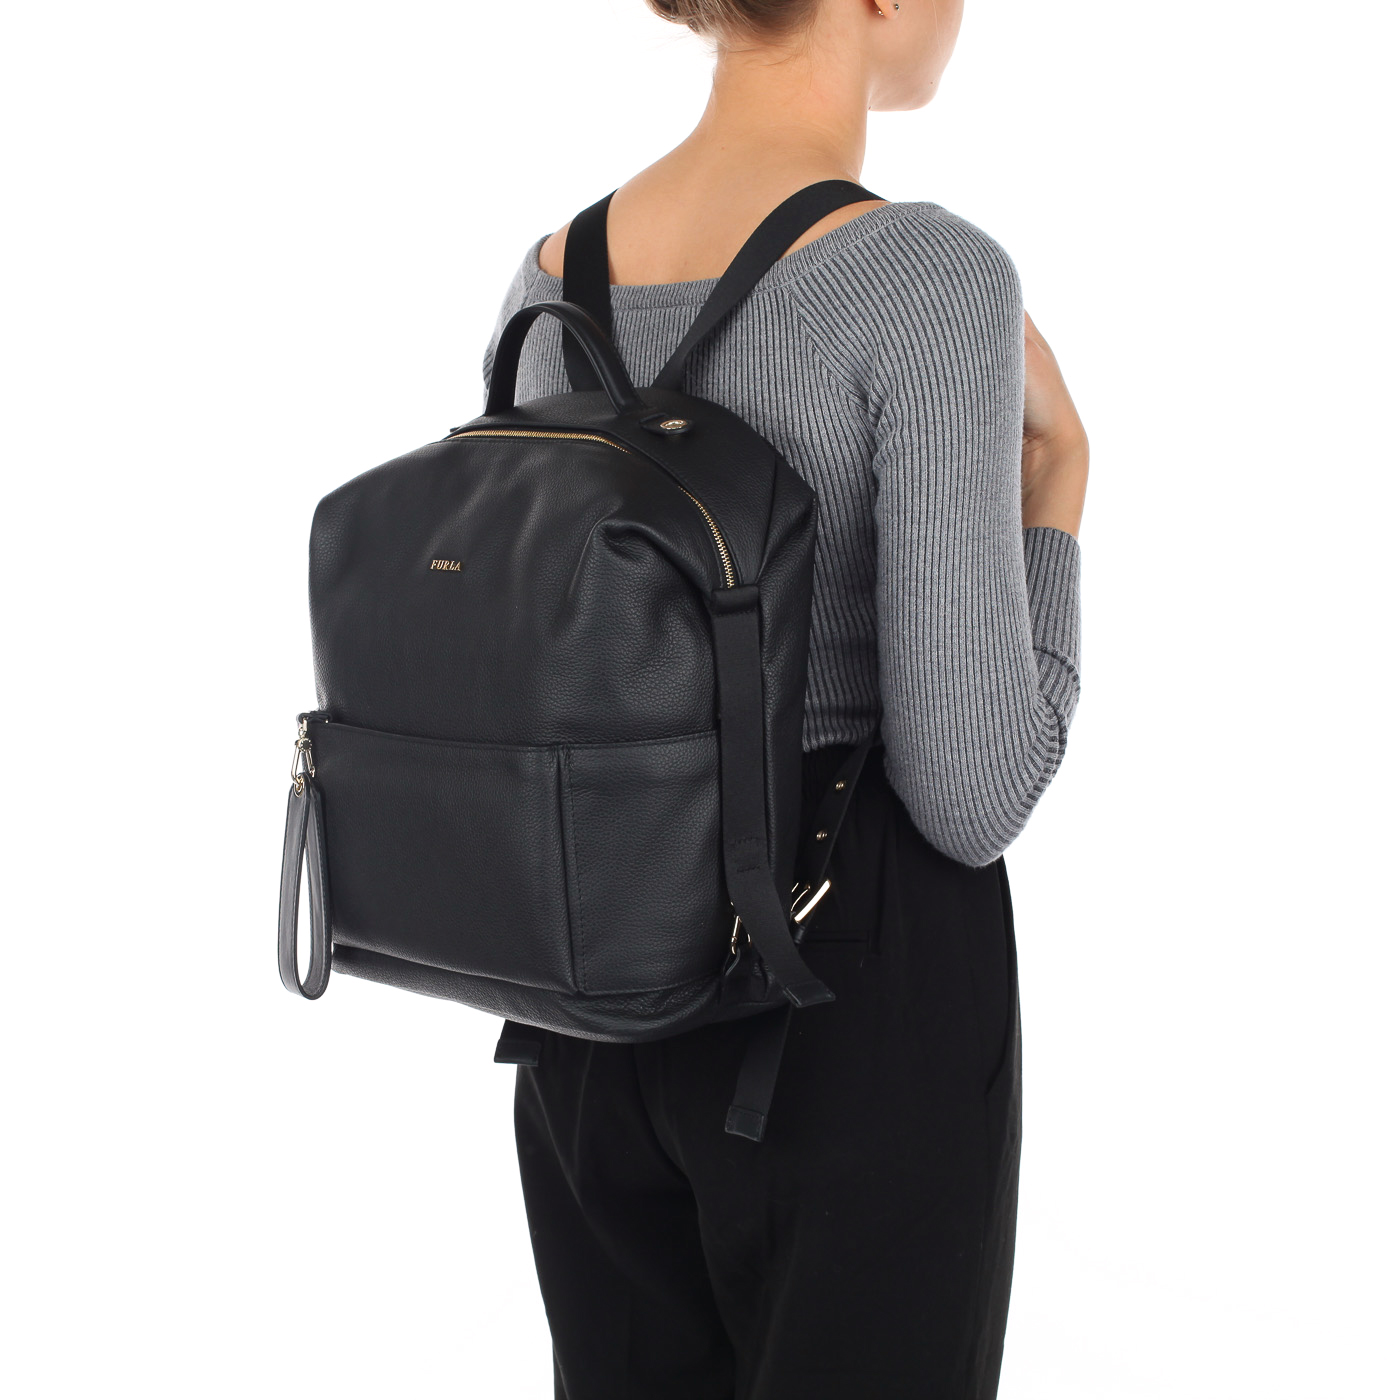 Аккуратный женский рюкзак черного цвета Furla Dafne avatar